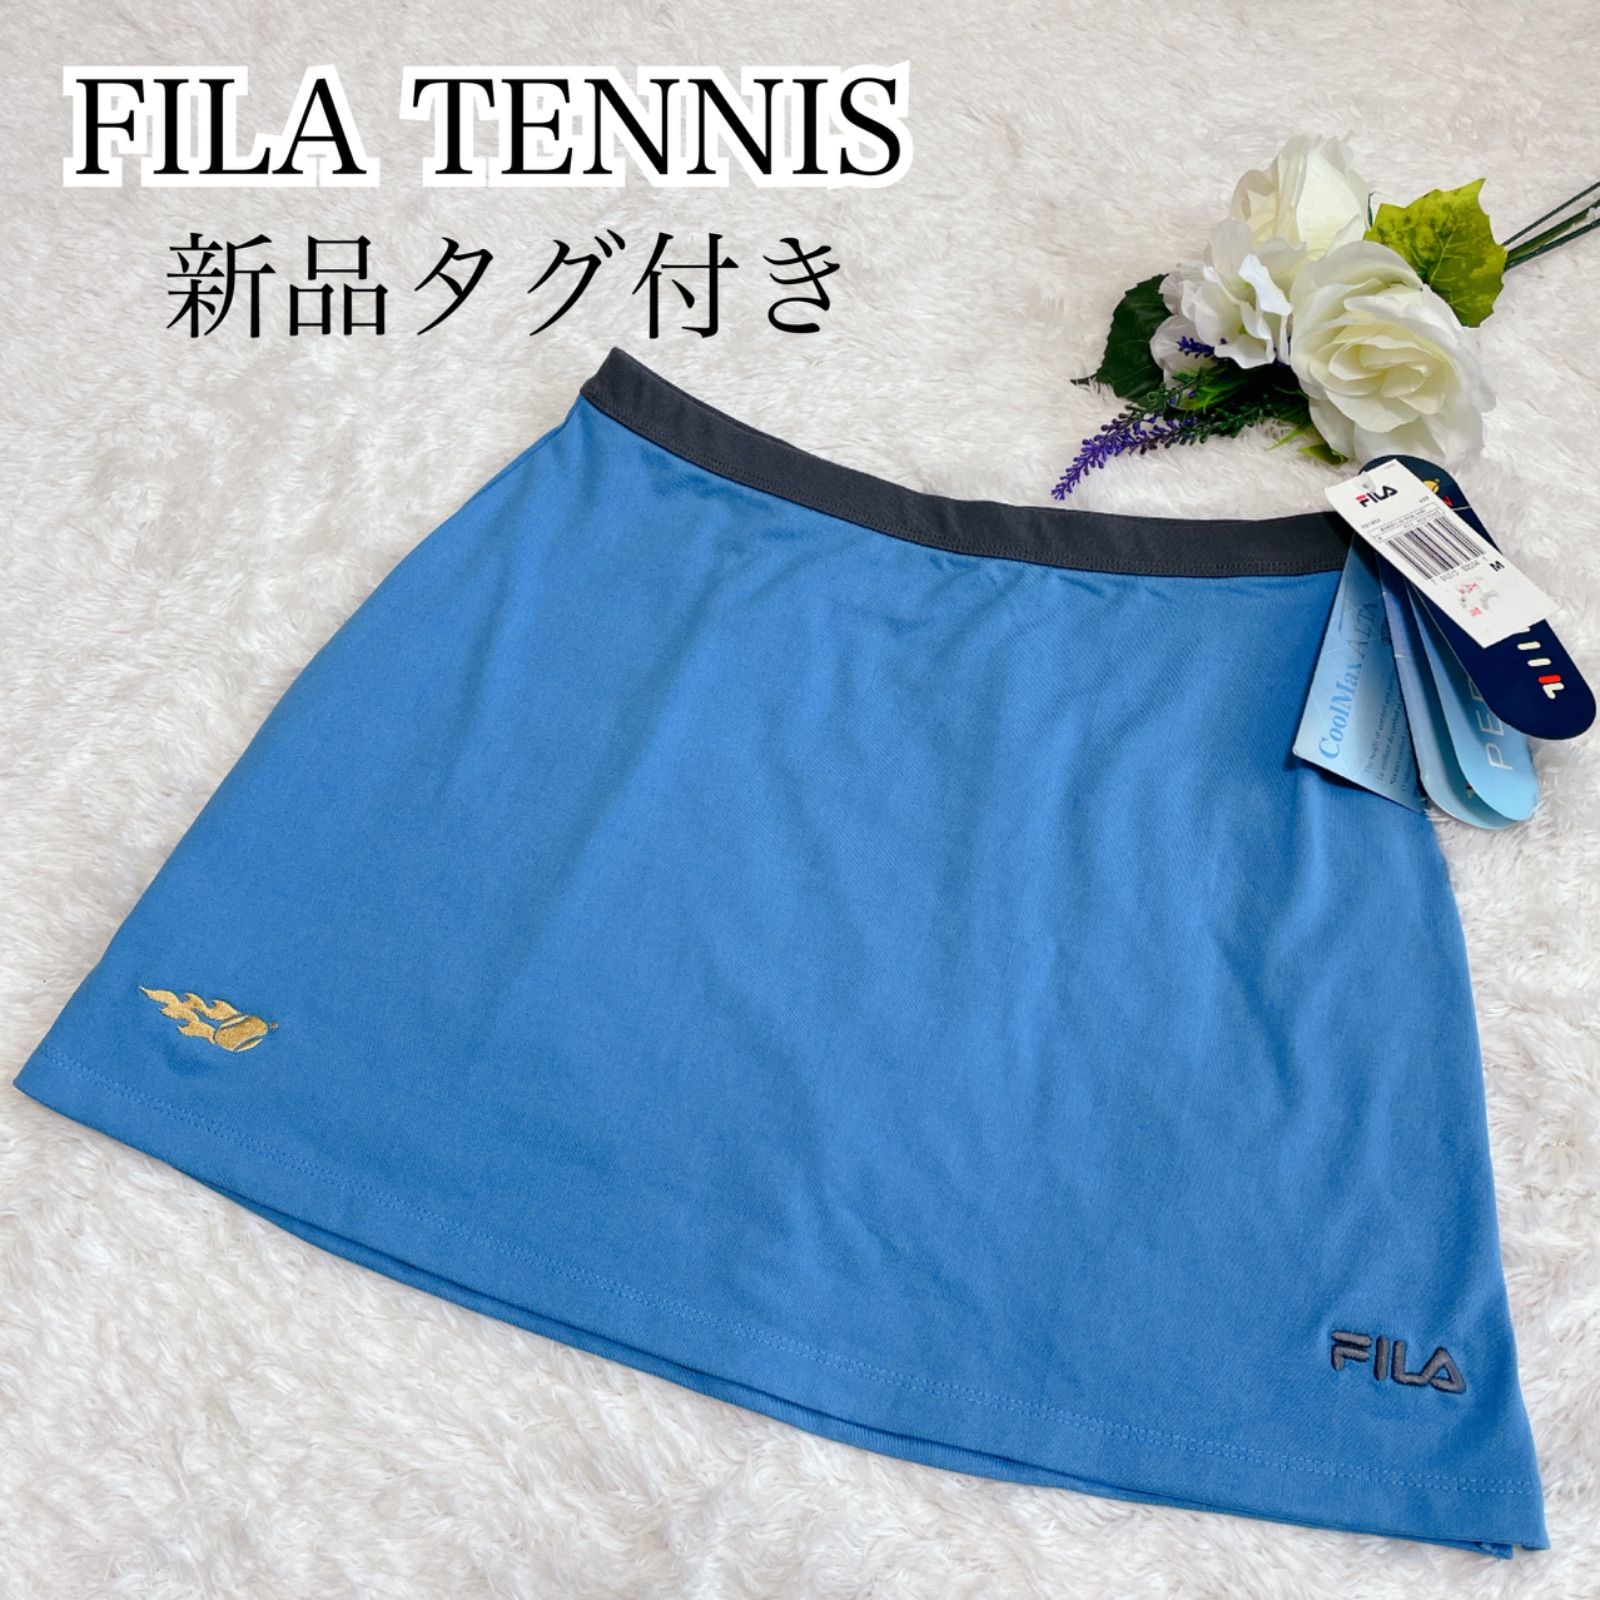 新品】FILA フィラテニス スカート スコートライトブルー 青 Mサイズ